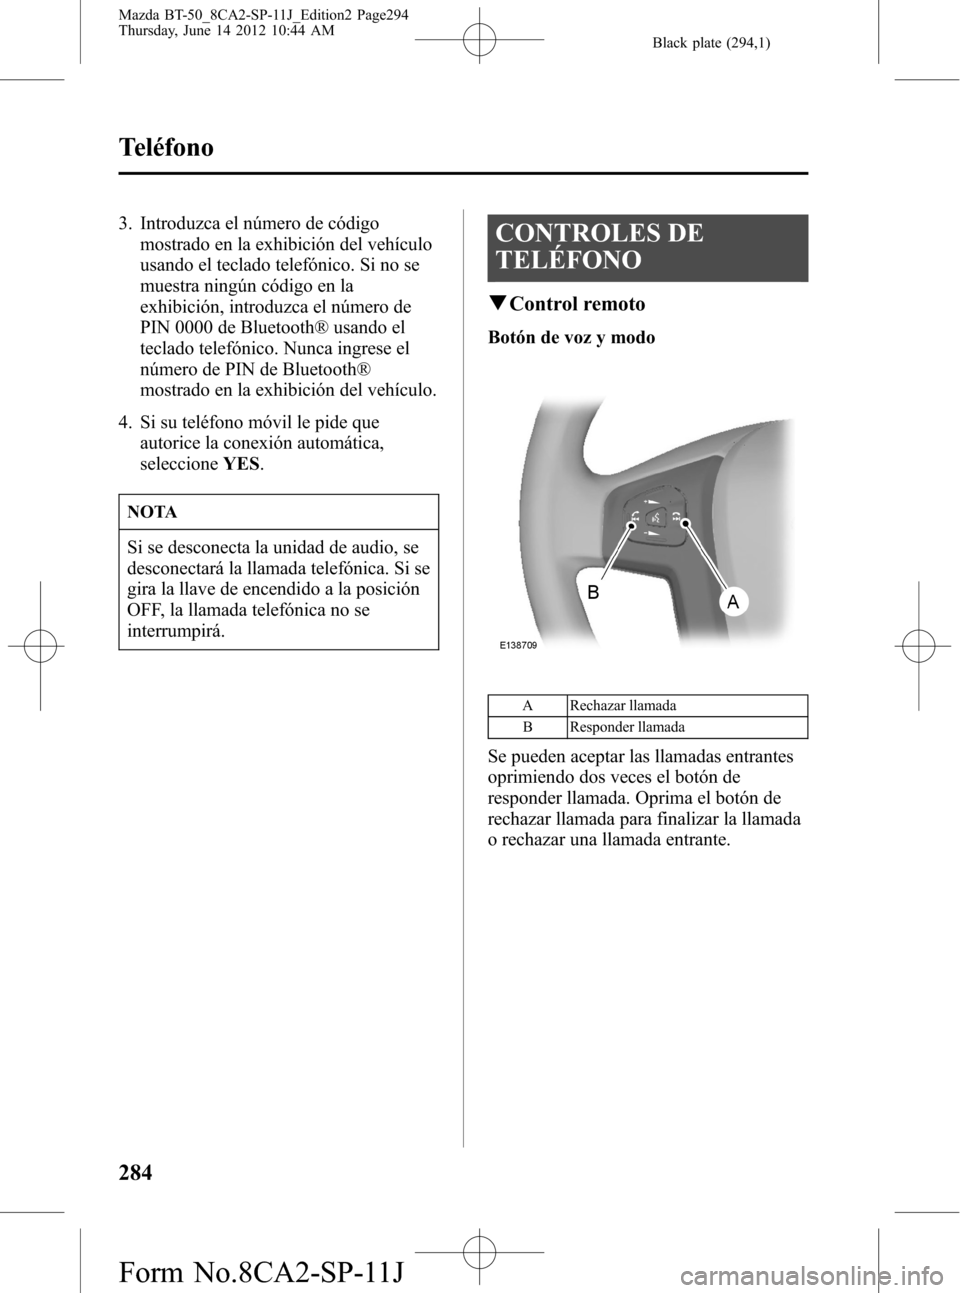 MAZDA MODEL BT-50 2015  Manual del propietario (in Spanish) Black plate (294,1)
3. Introduzca el número de código
mostrado en la exhibición del vehículo
usando el teclado telefónico. Si no se
muestra ningún código en la
exhibición, introduzca el númer